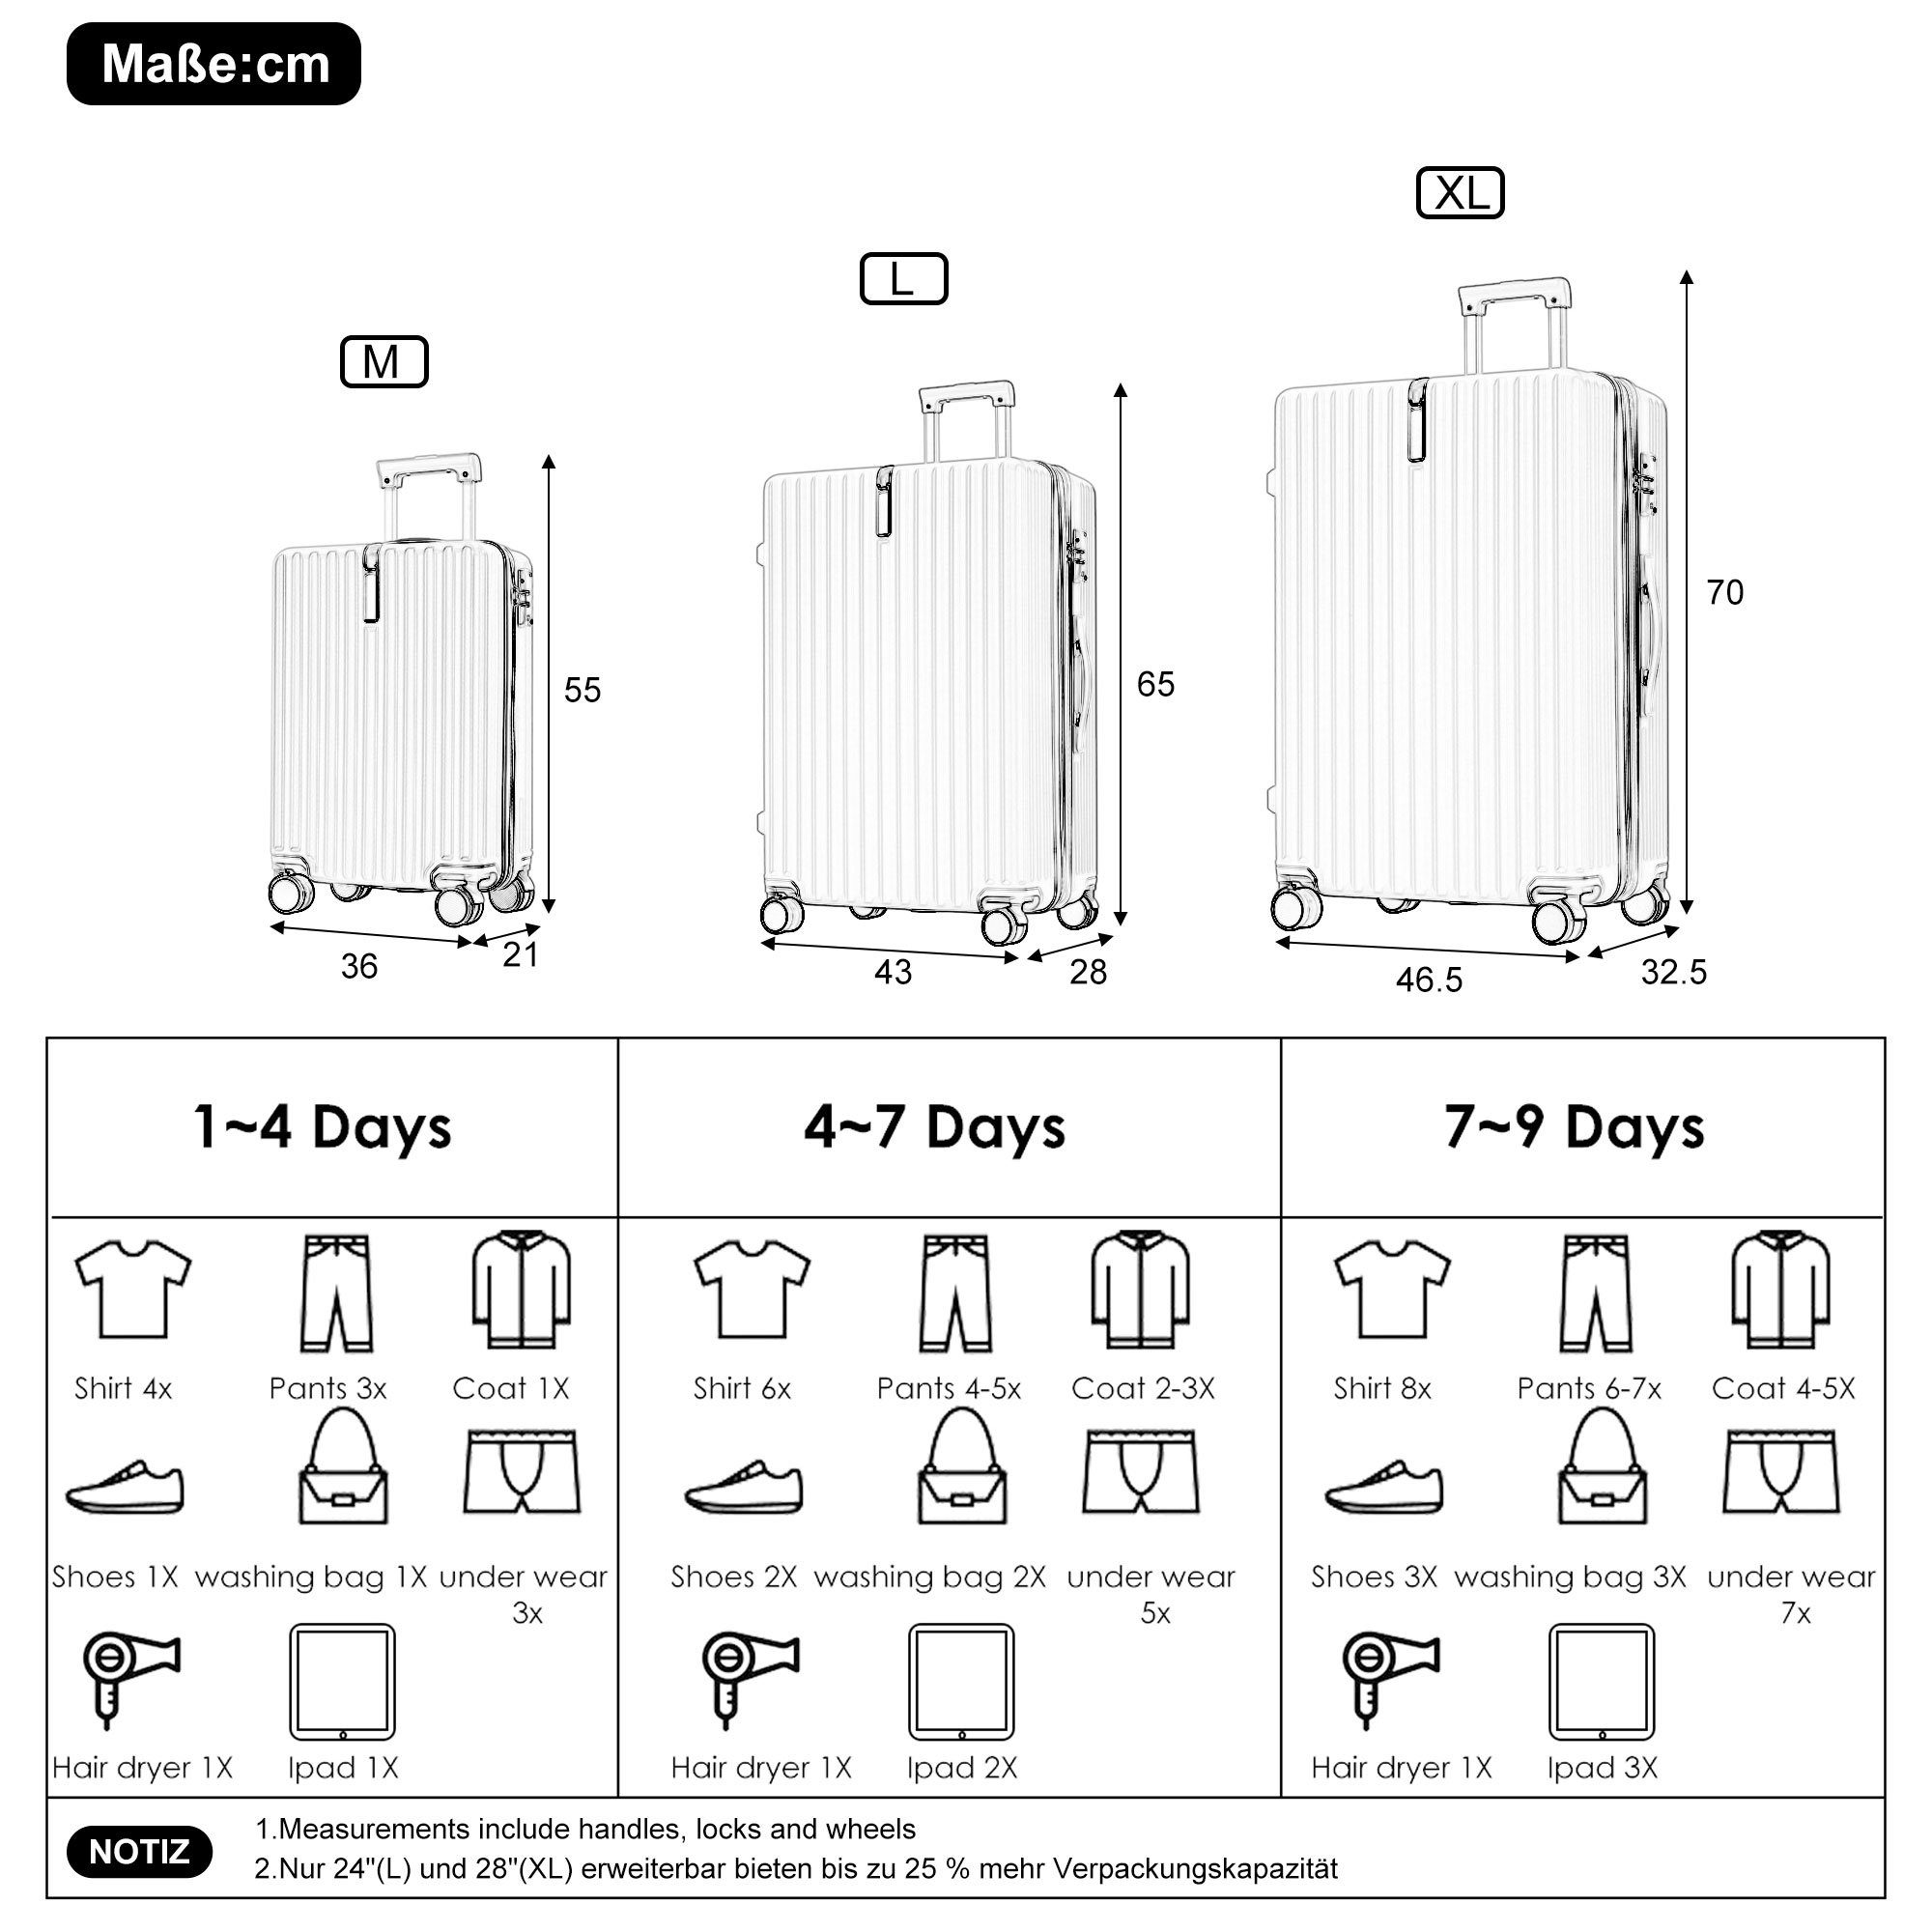 Ulife Trolleyset Kofferset Handgepäck Reisekoffer TSA (3 Zollschloss, 4 Rollen, Rosa ABS-Material, tlg)